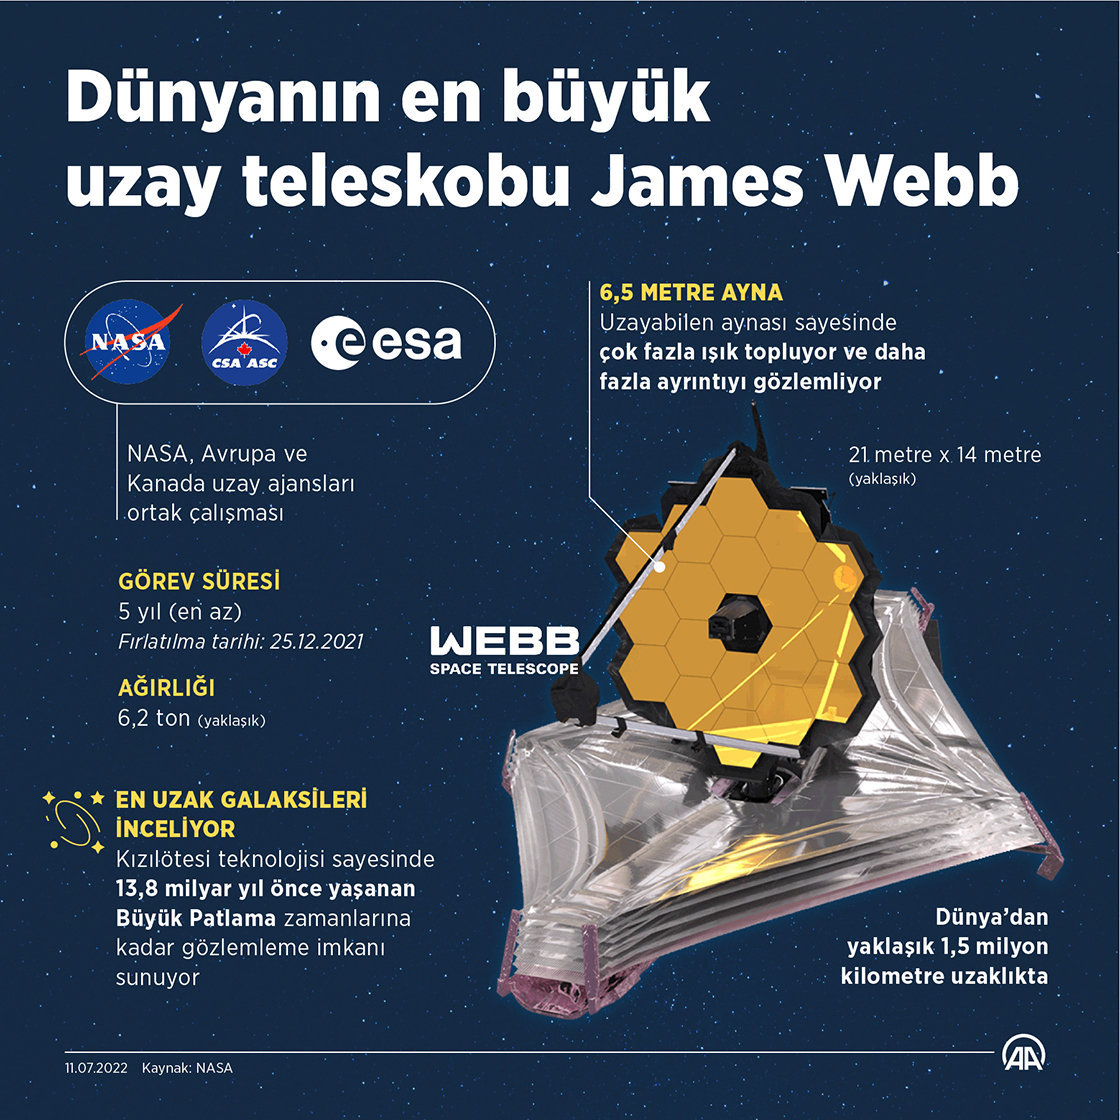 Dünyanın en büyük uzay teleskobu James Webb